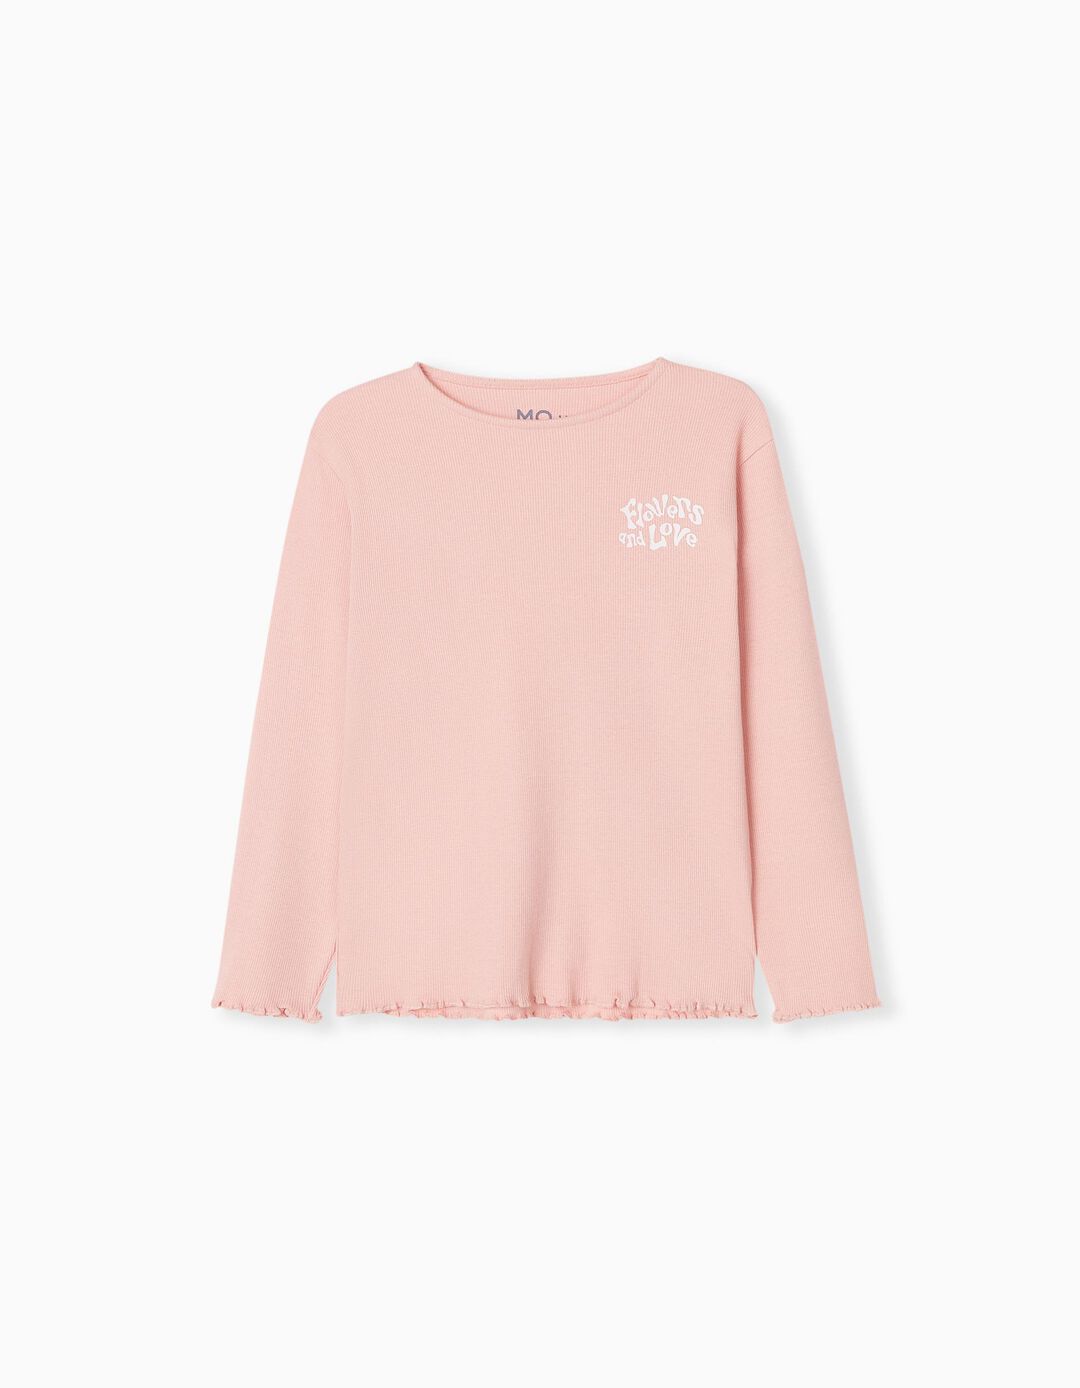 Frills Long Sleeve T-shirt, Girls, Light Pink